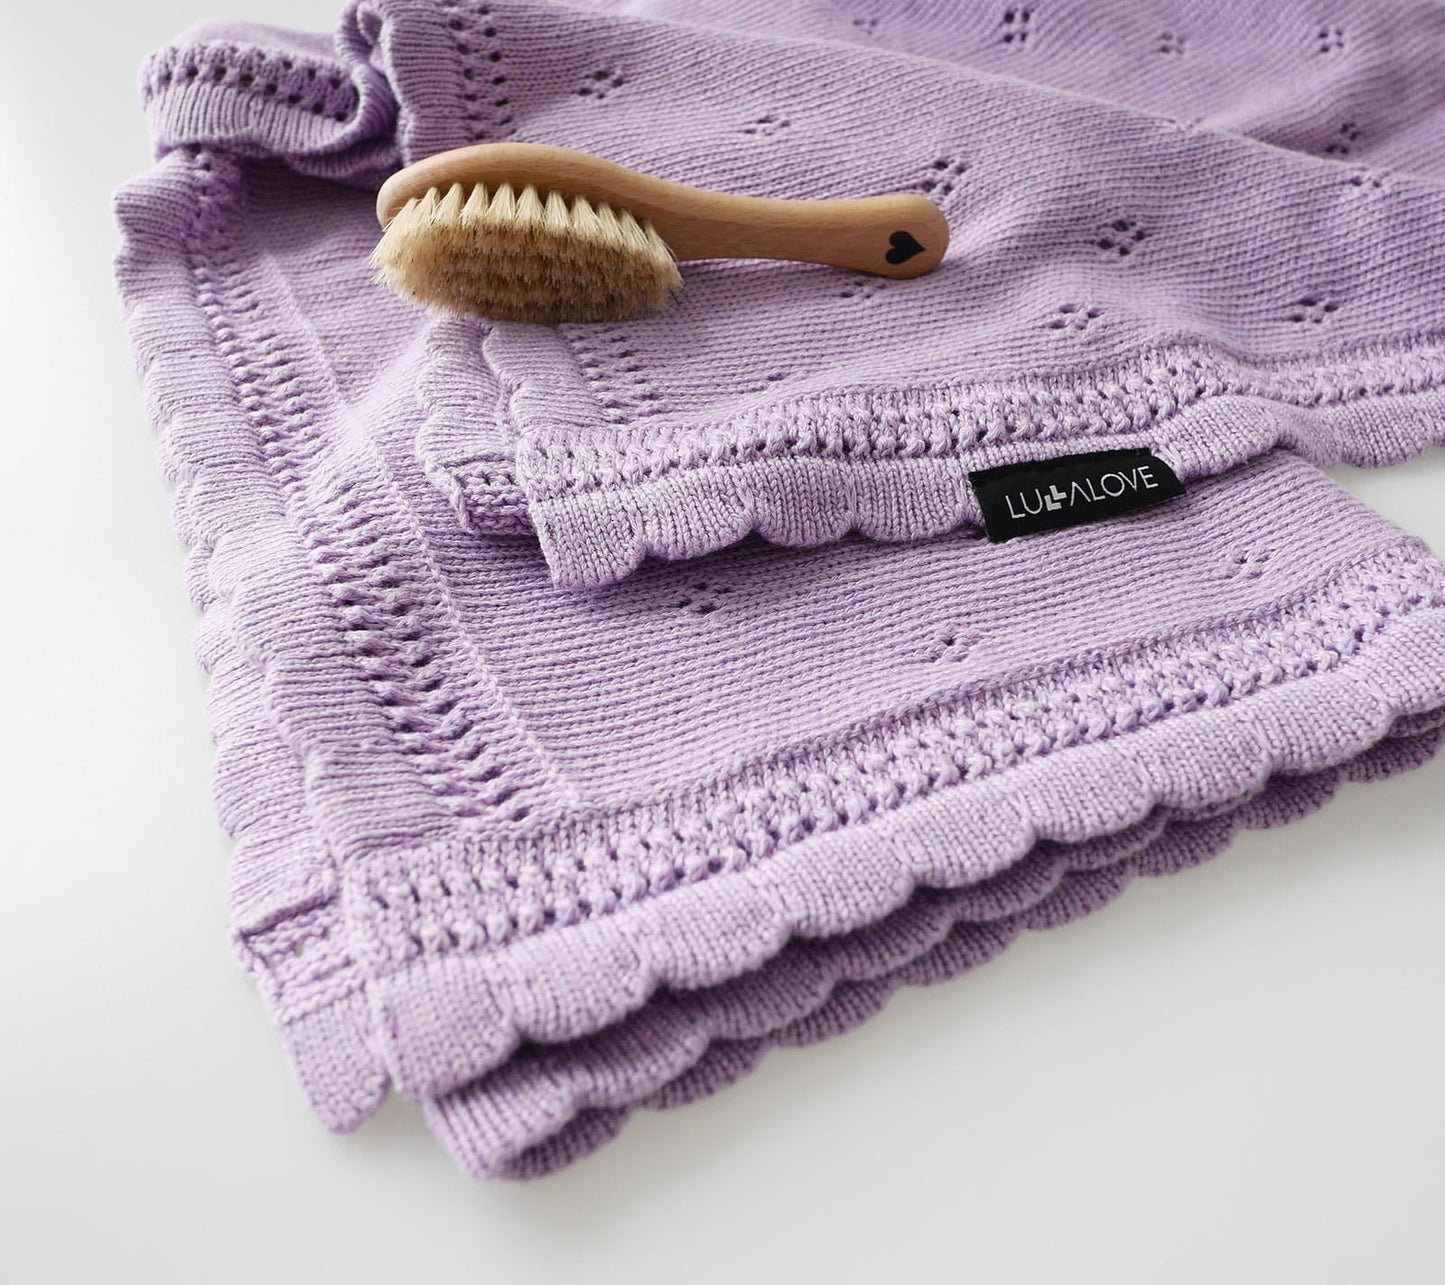 Soft cellular bamboo baby blanket - Lavender - Daisy Blanket Lullalove UK 